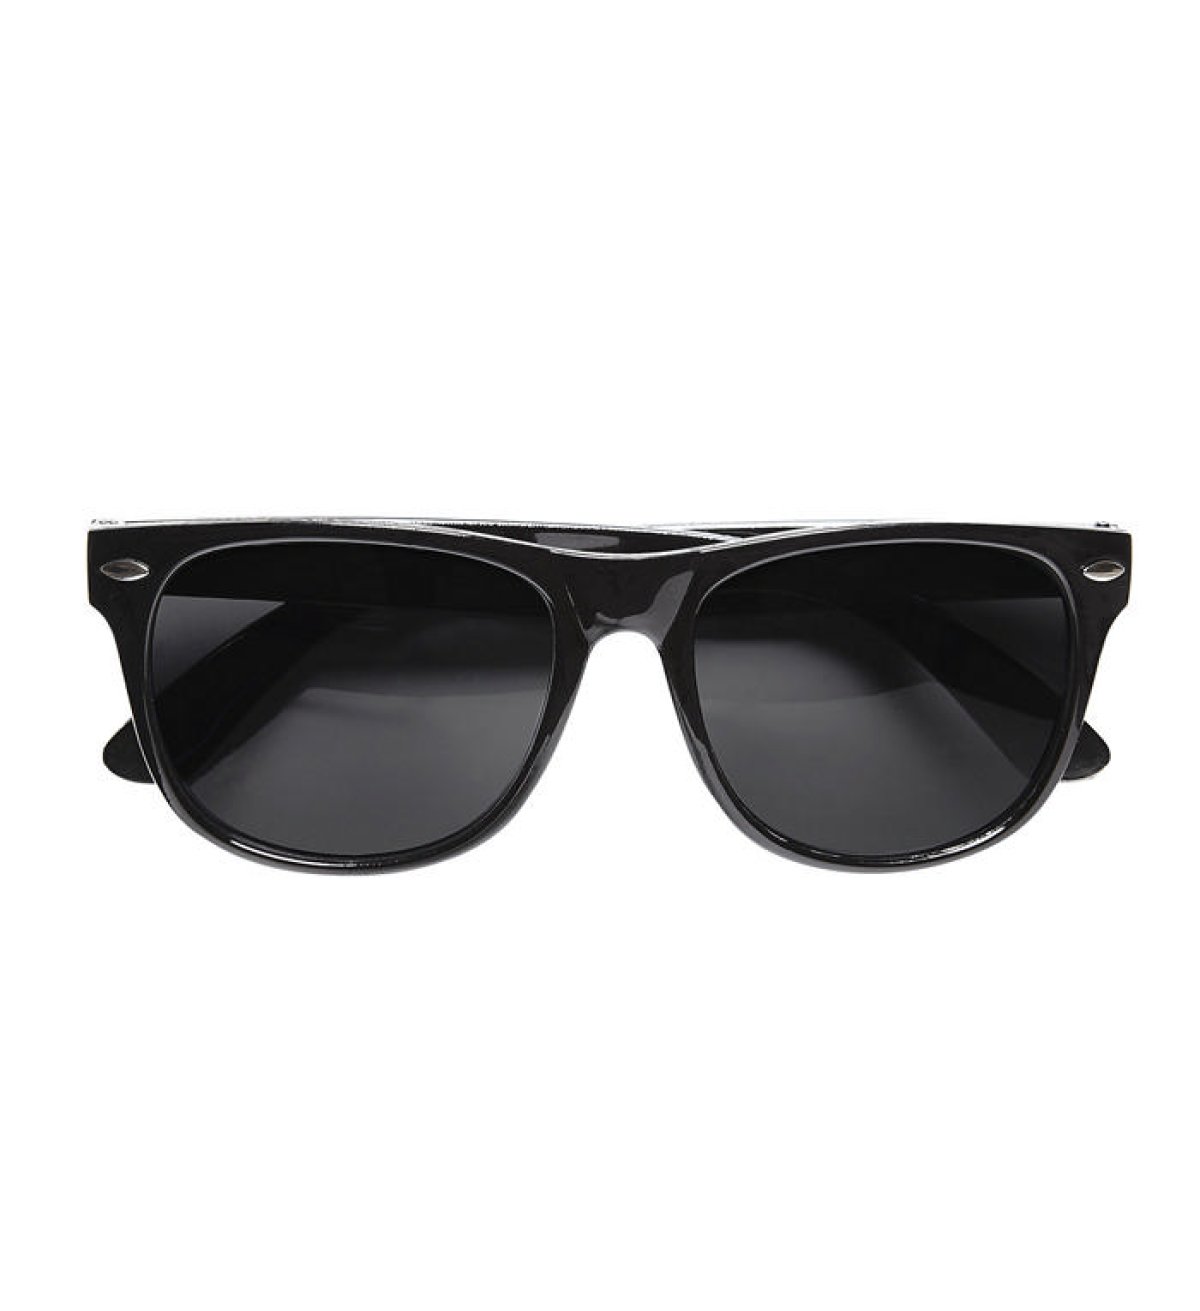 Køb Wayfarer solbriller til kun 39 kr | Lynhurtig 24t levering |